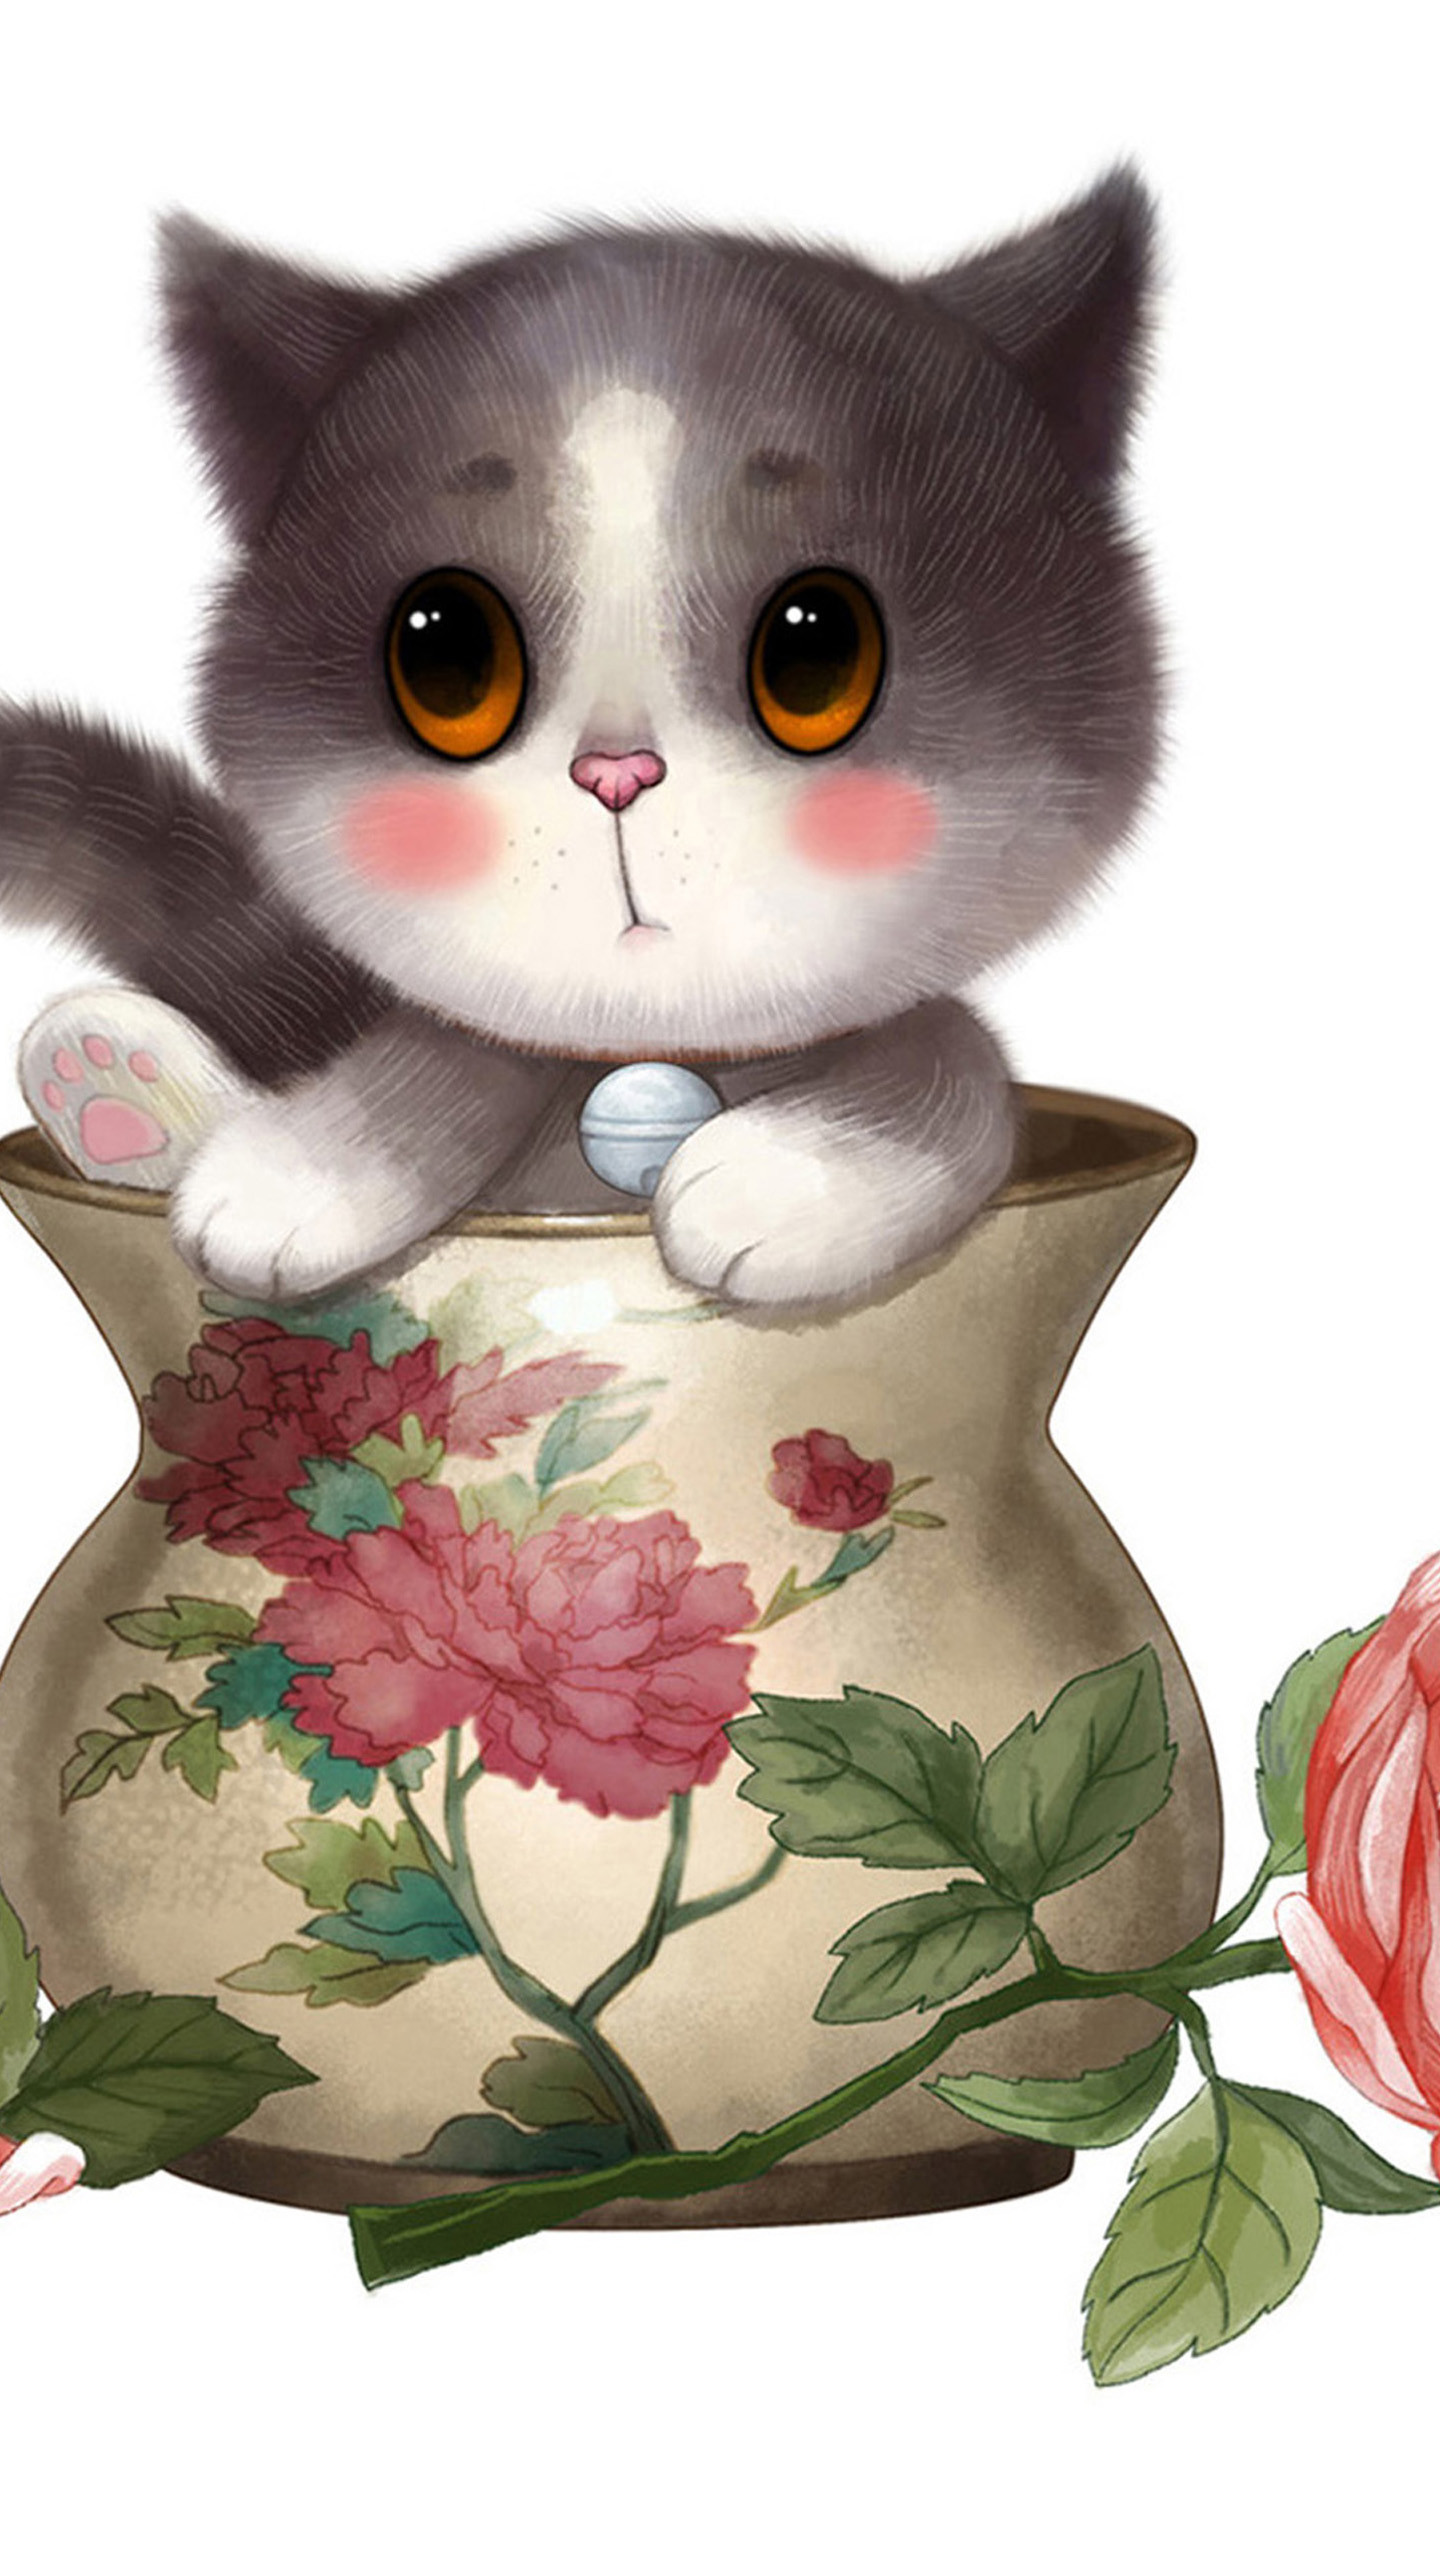 hình ảnh chú mèo trong lọ hoa